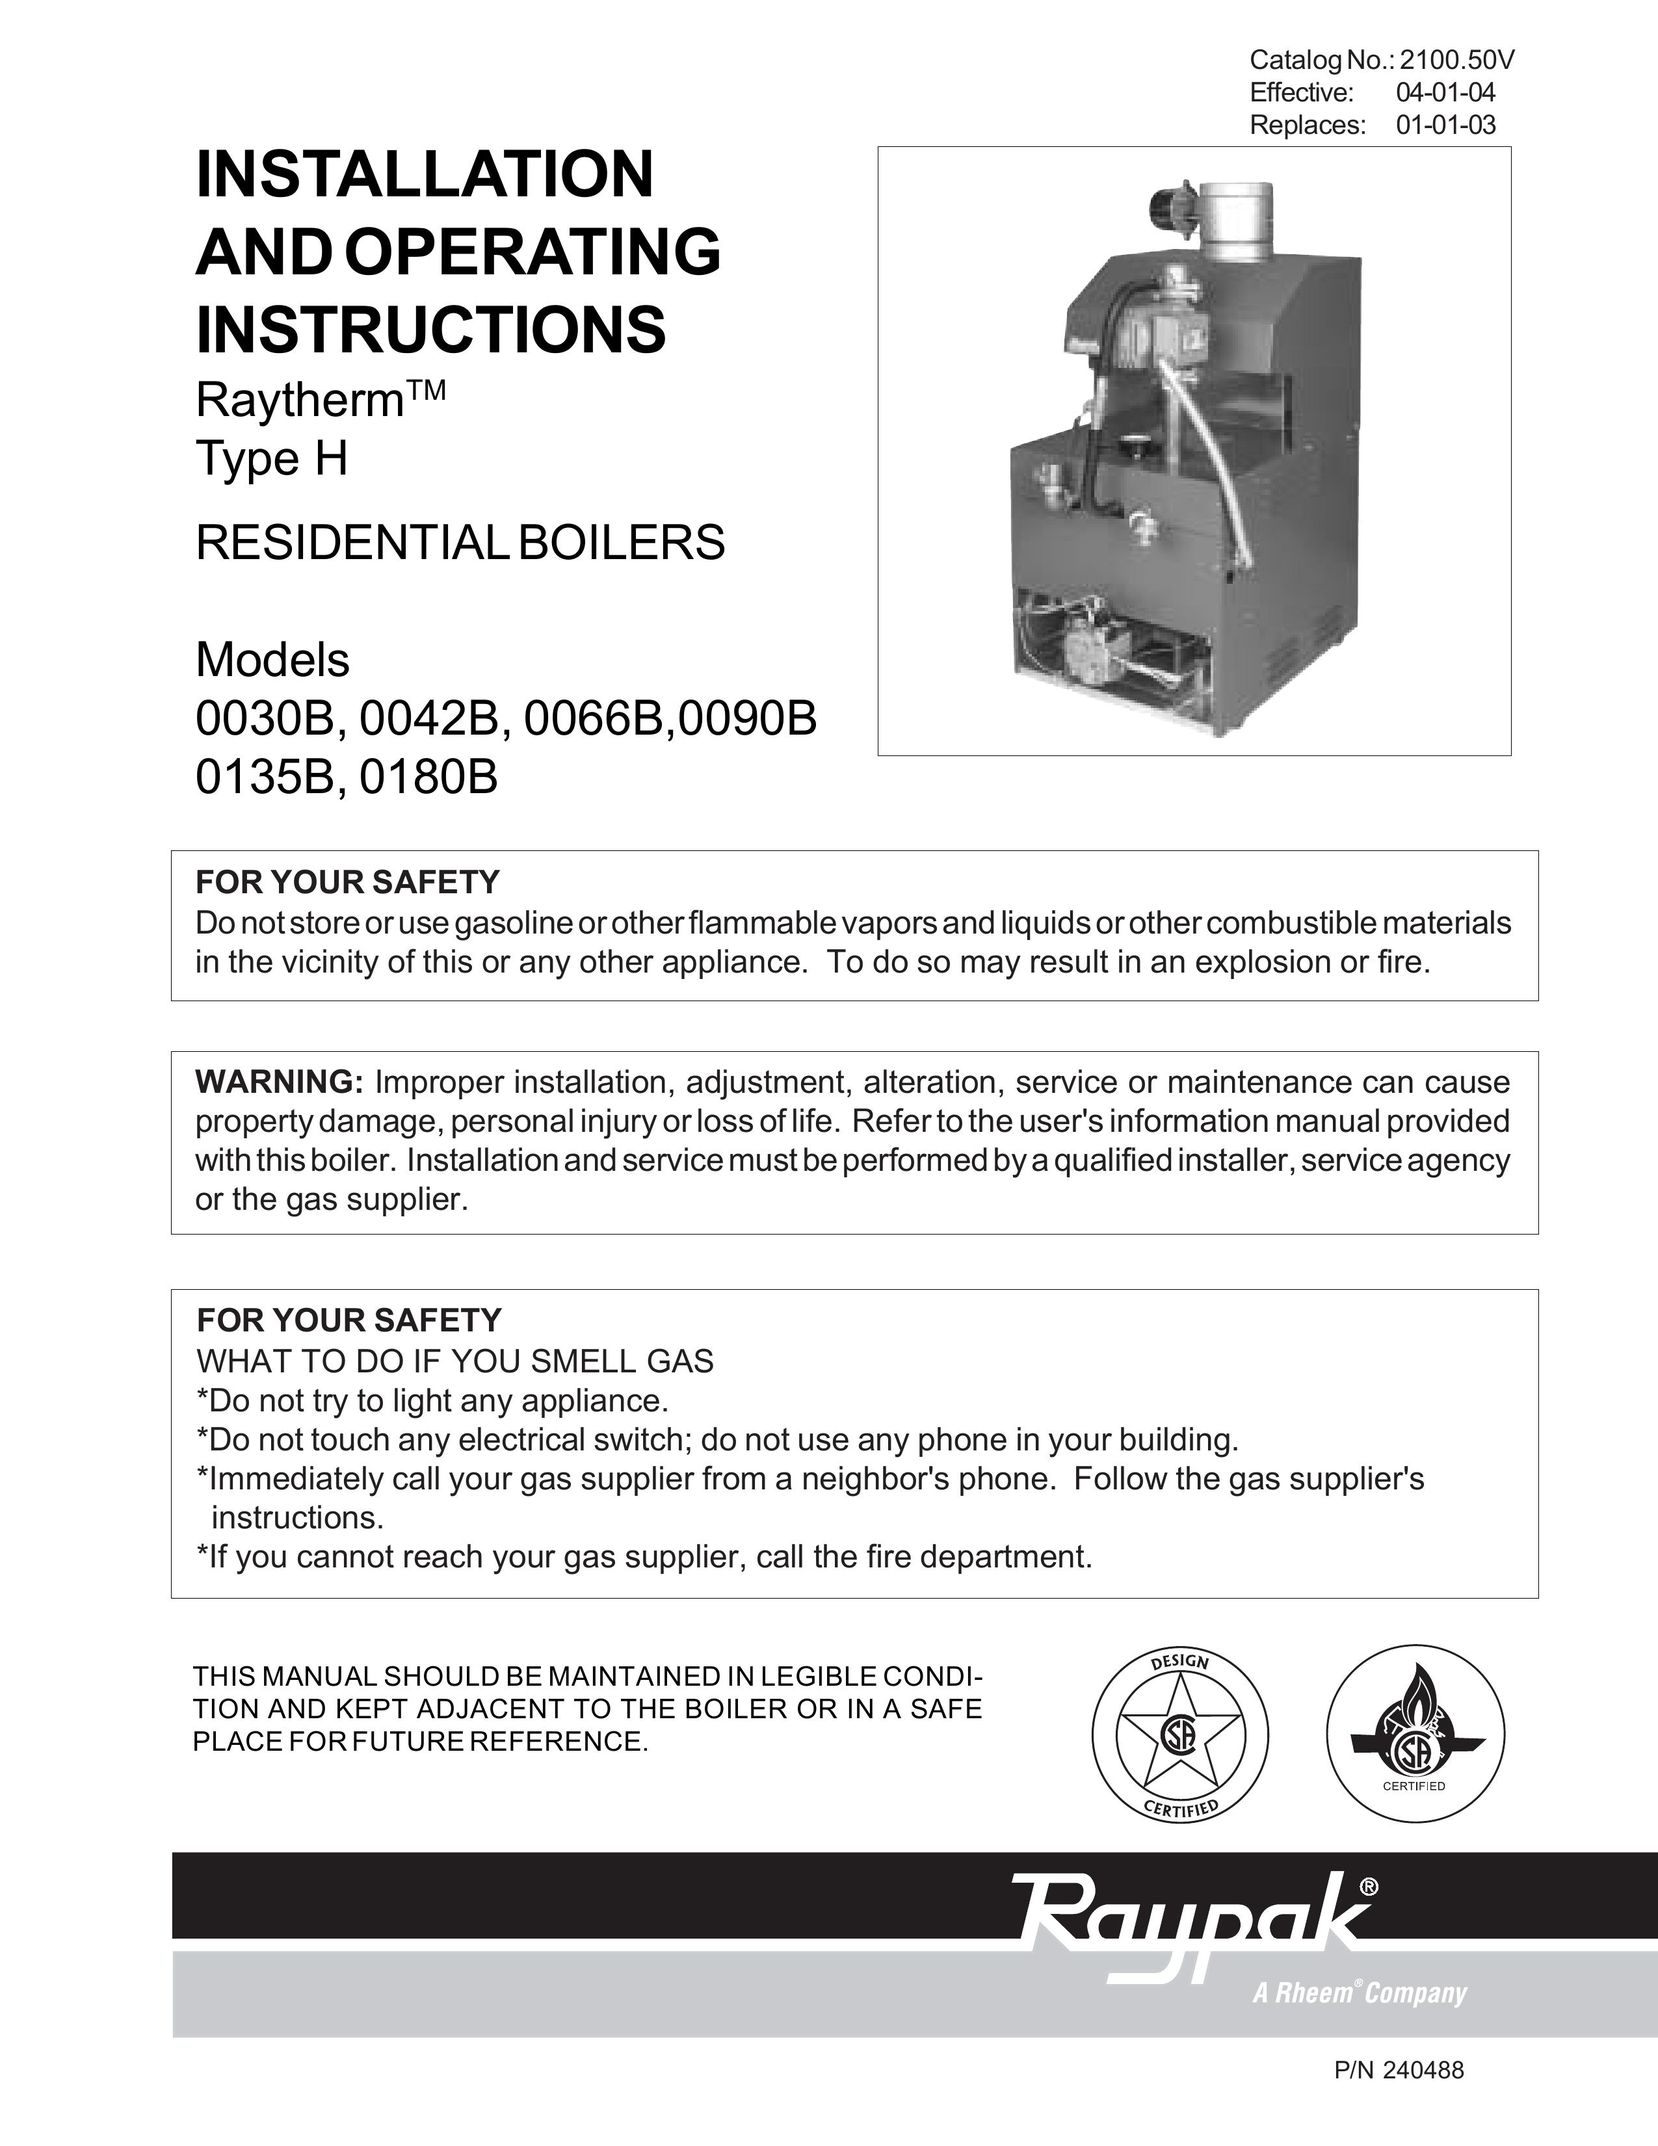 Raypak 0135B Boiler User Manual